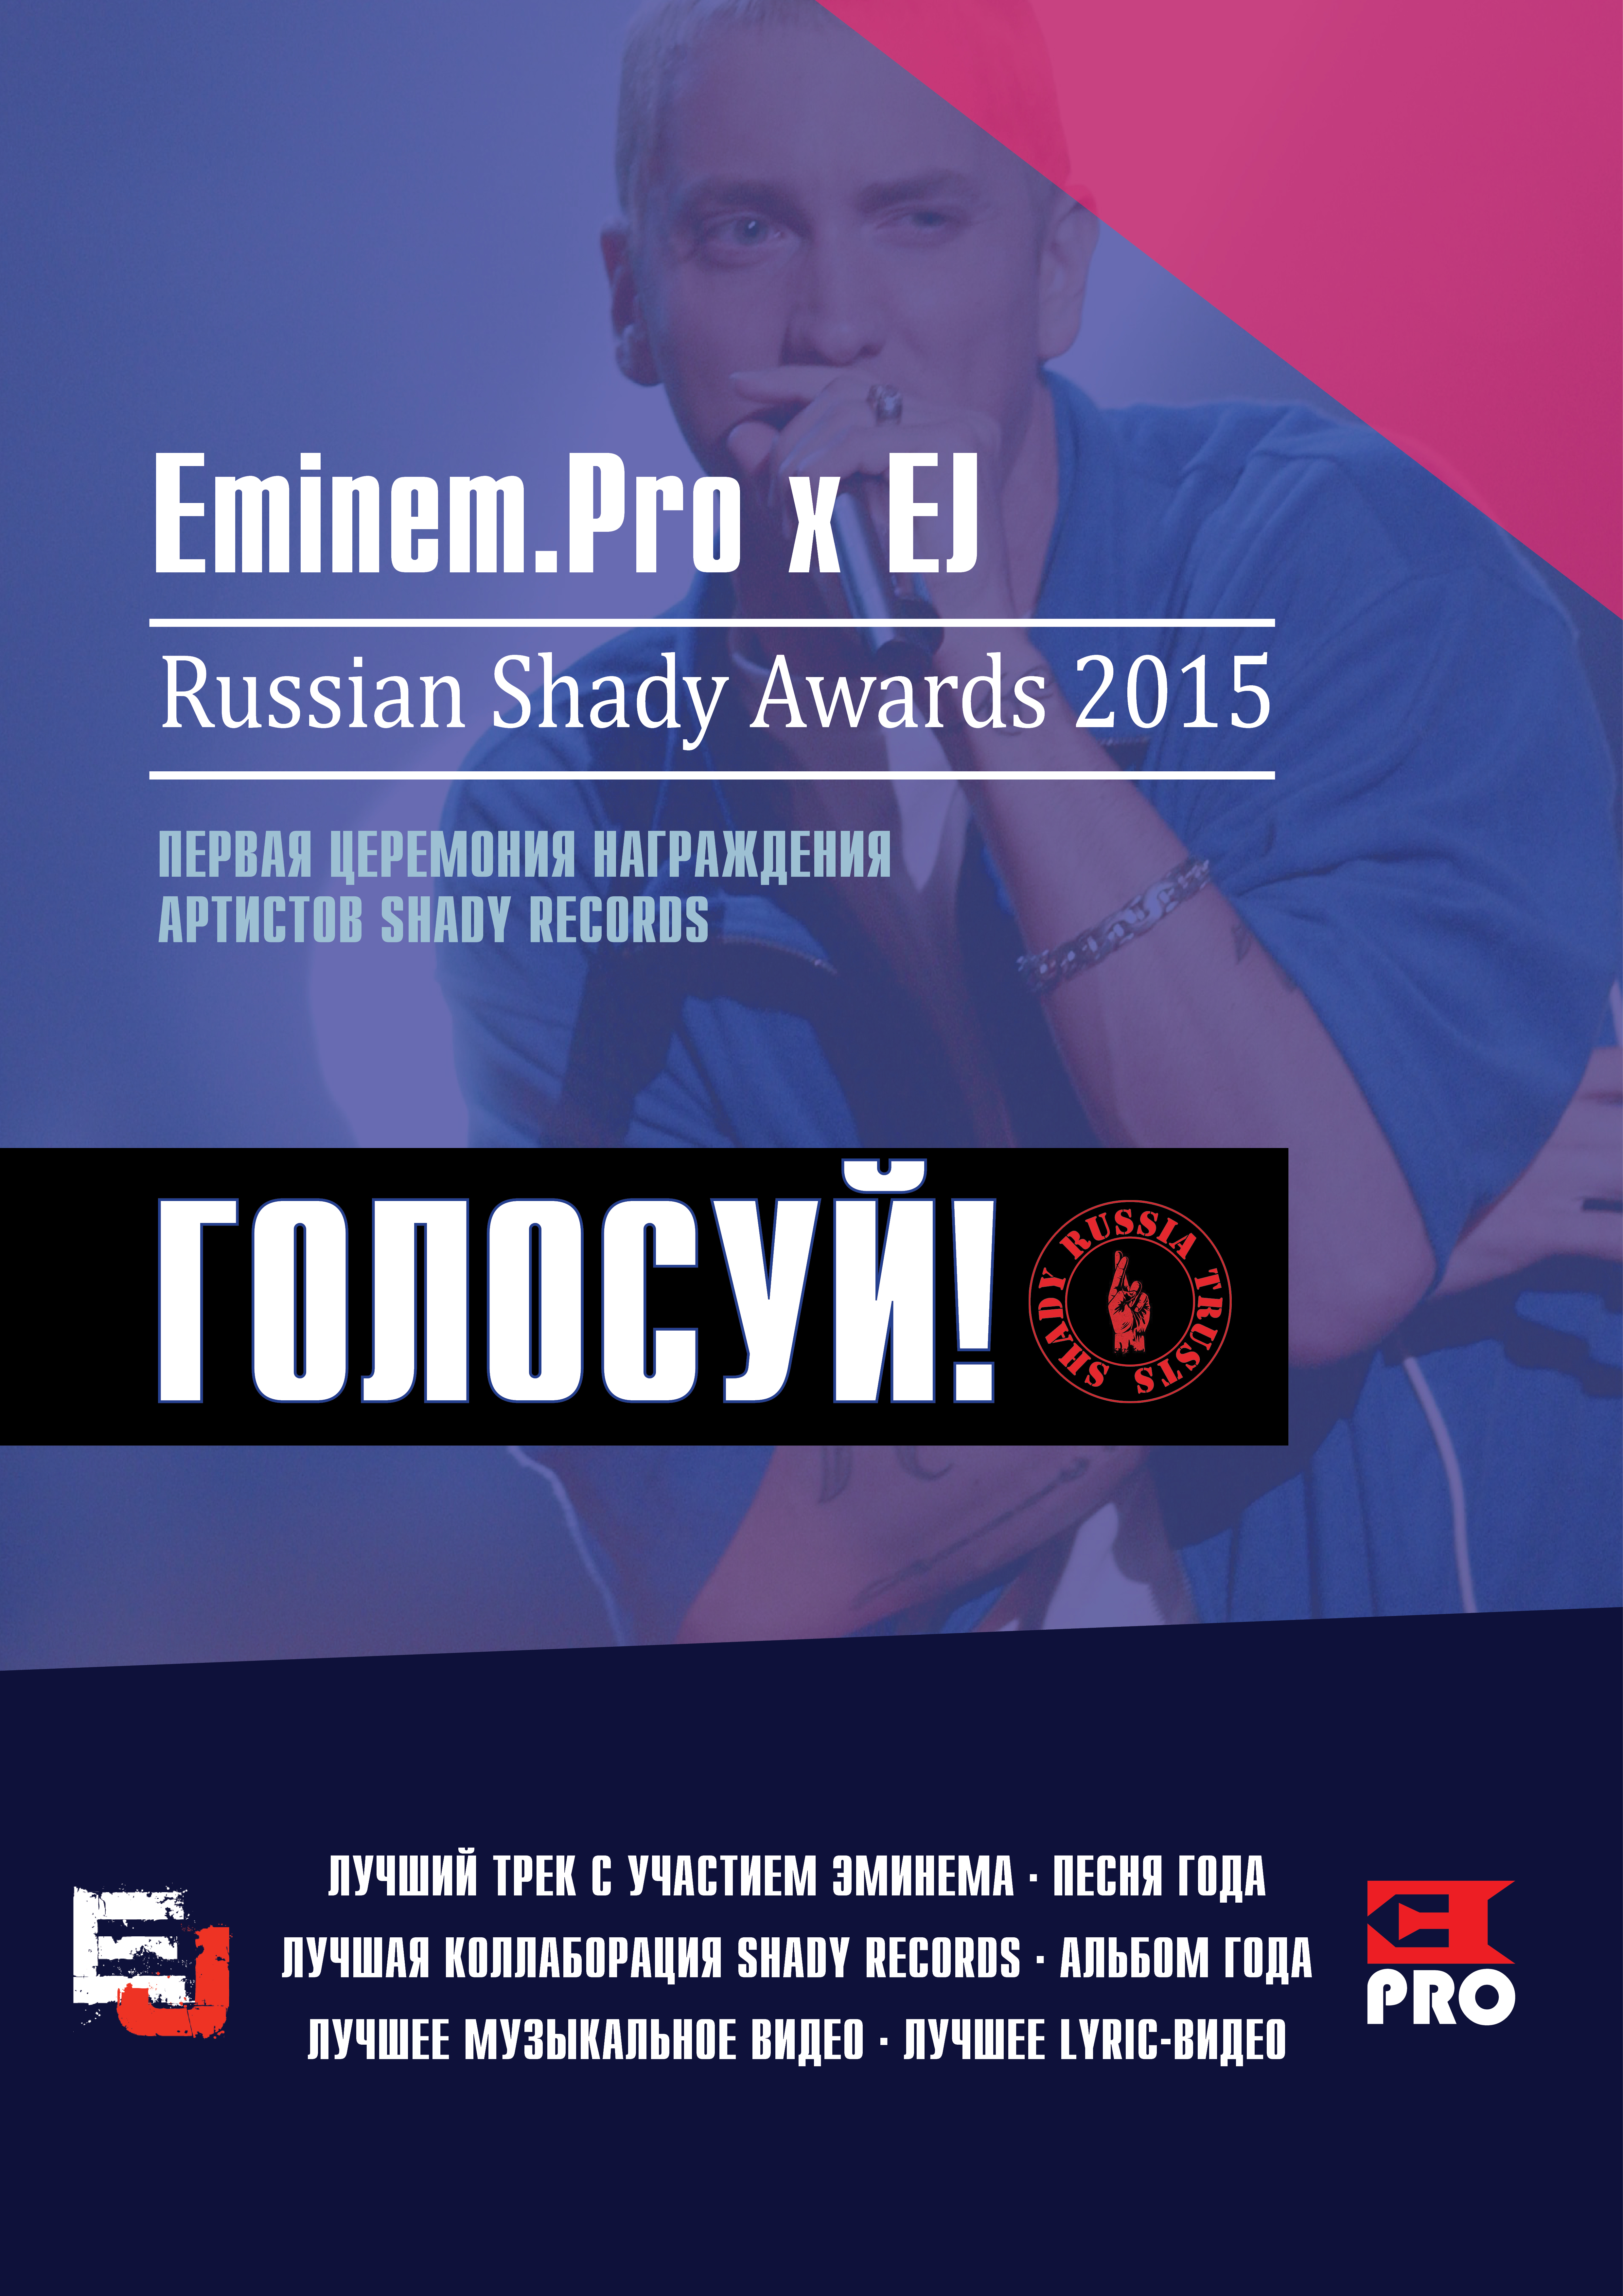 Russia Shady Awards 2015